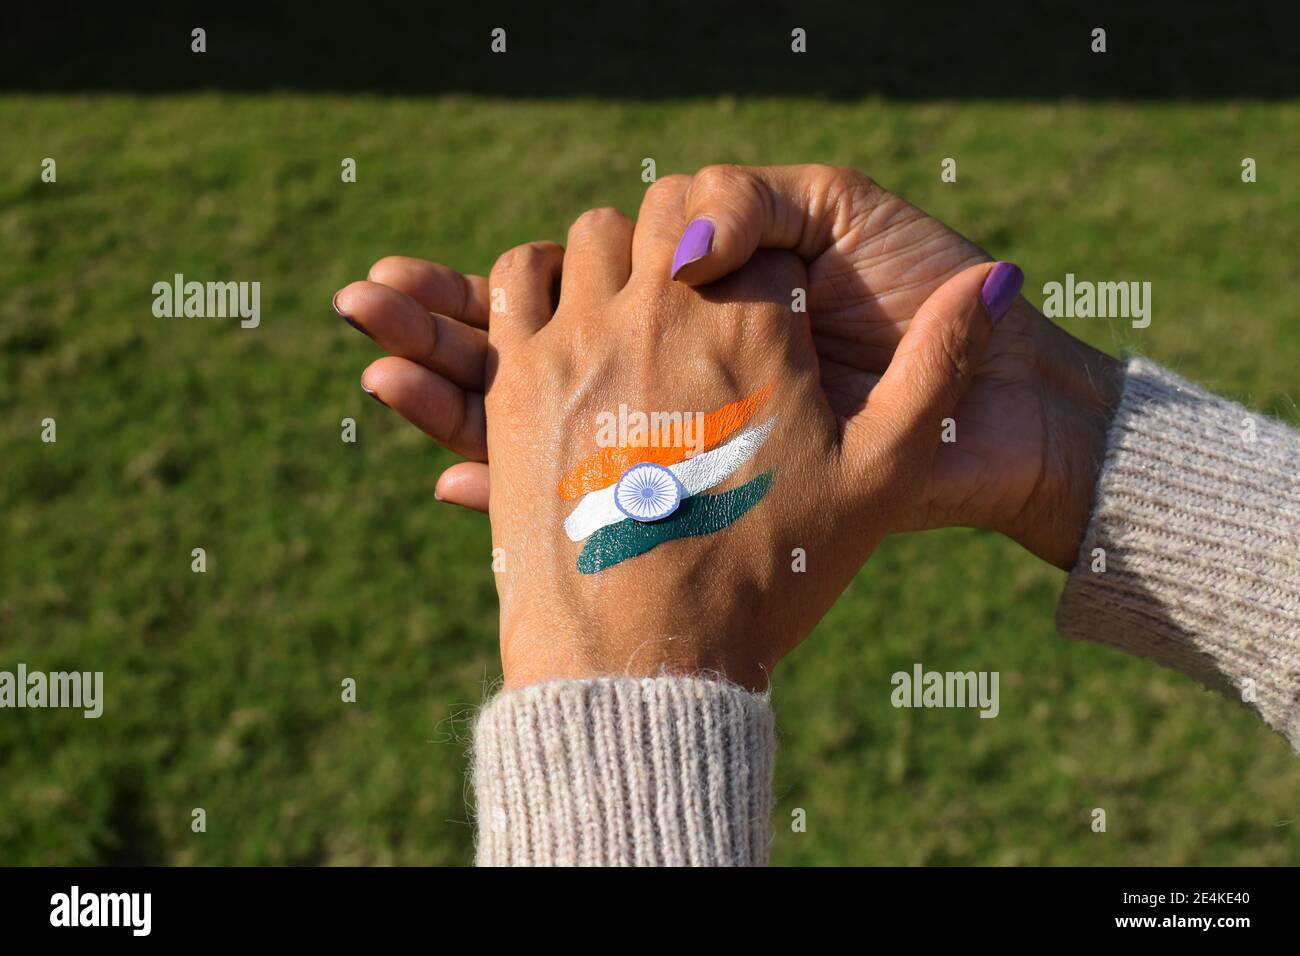 Tatouage drapeau indien de trois couleurs peint sur la main de la personne Encourager et célébrer la Journée de la république indienne Banque D'Images